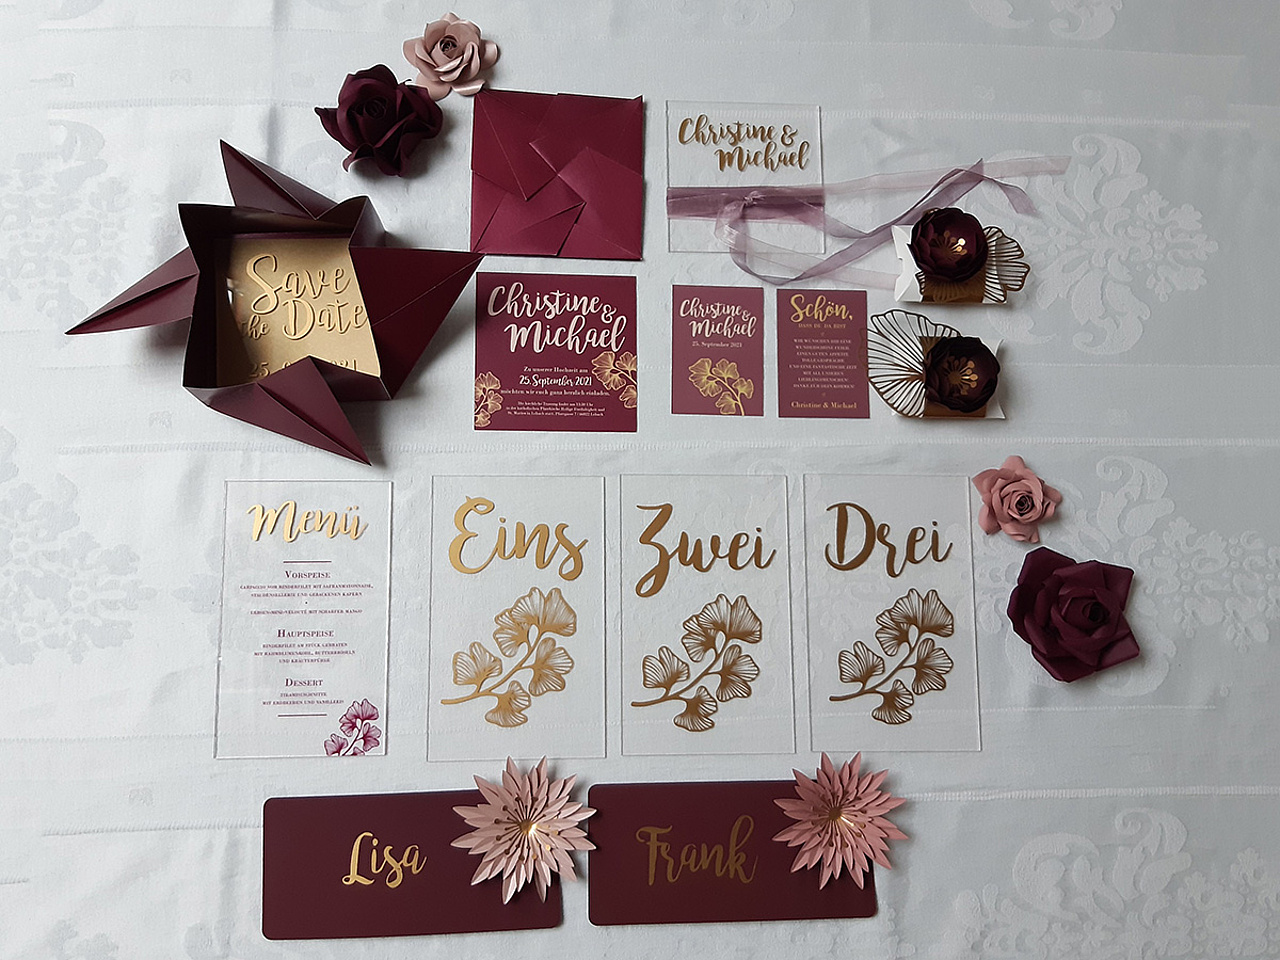 Herbstliche Hochzeitspapeterie in den Farben burgundy, rosa und Gold in Kombination mit Acrylglaselemten.